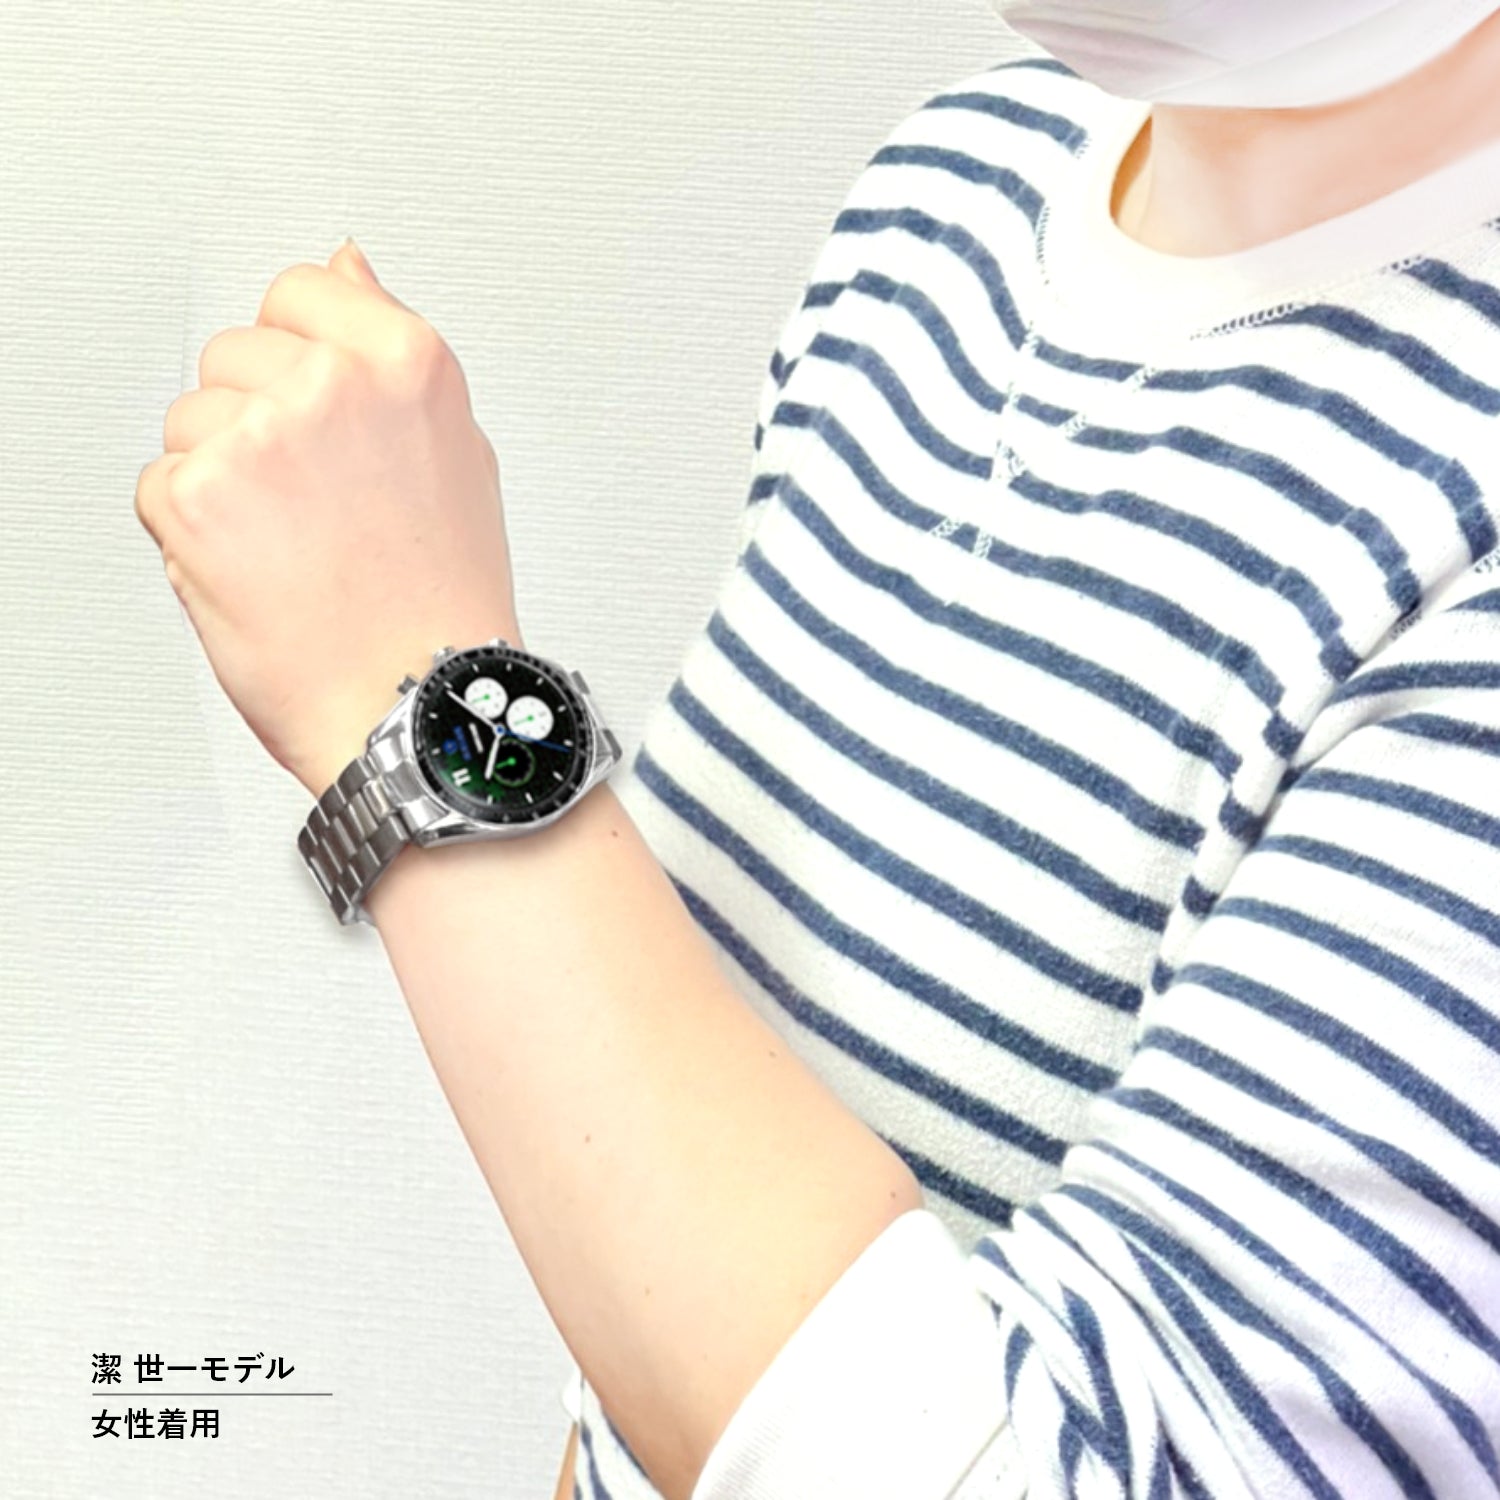 テレビアニメ「ブルーロック」オフィシャルクロノグラフ腕時計 蜂楽 廻 - 公式通販サイト「アニメコレクション/Anime Collection」